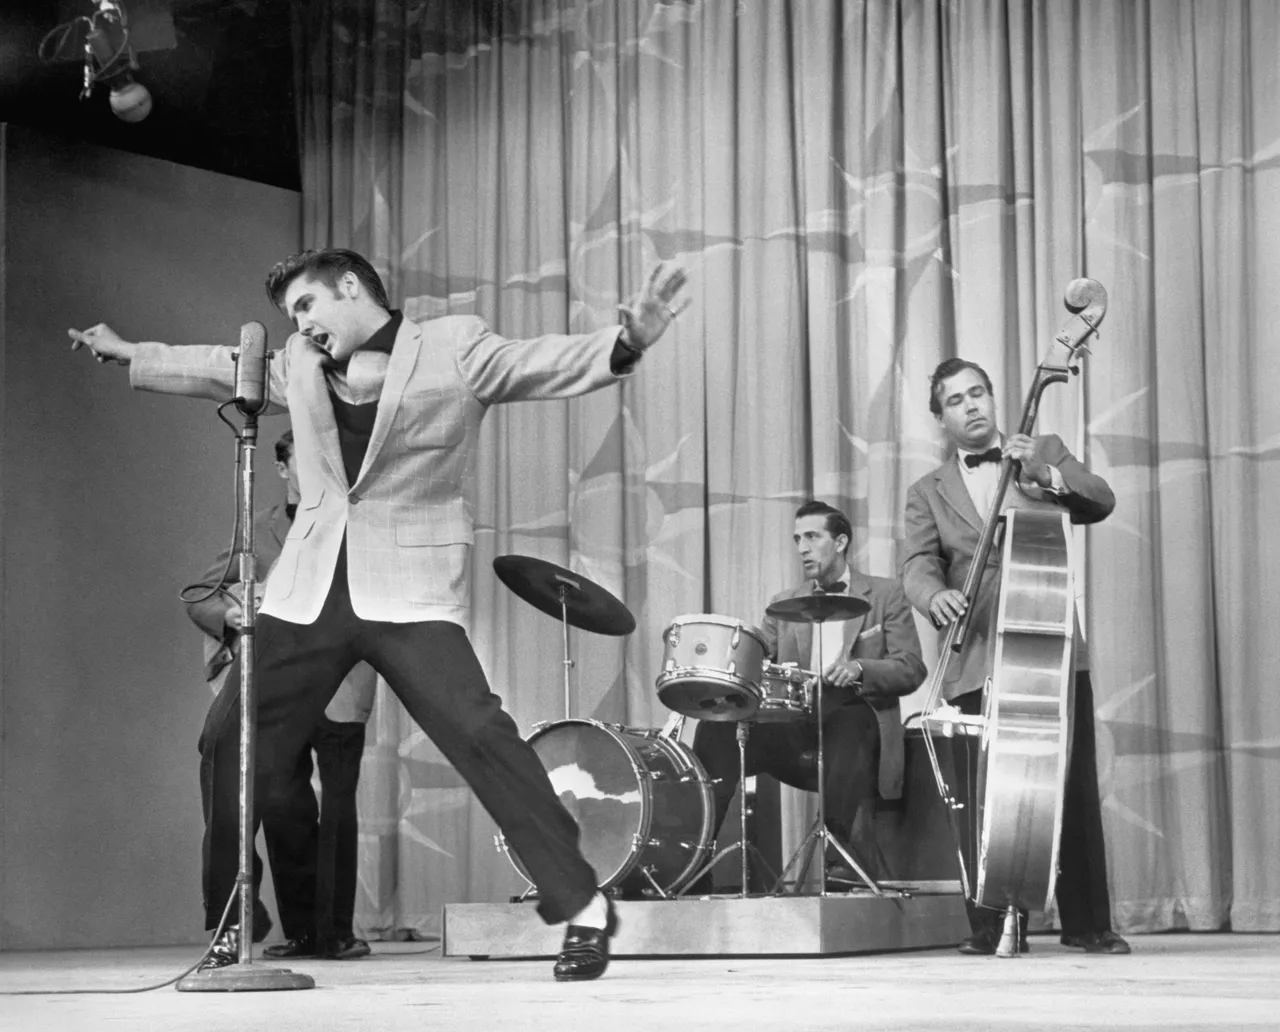 1955 - Elvis Presley - elvis-presley-performing-on-stage-517331138-5a79cf7730371300363f4ee0.jpg